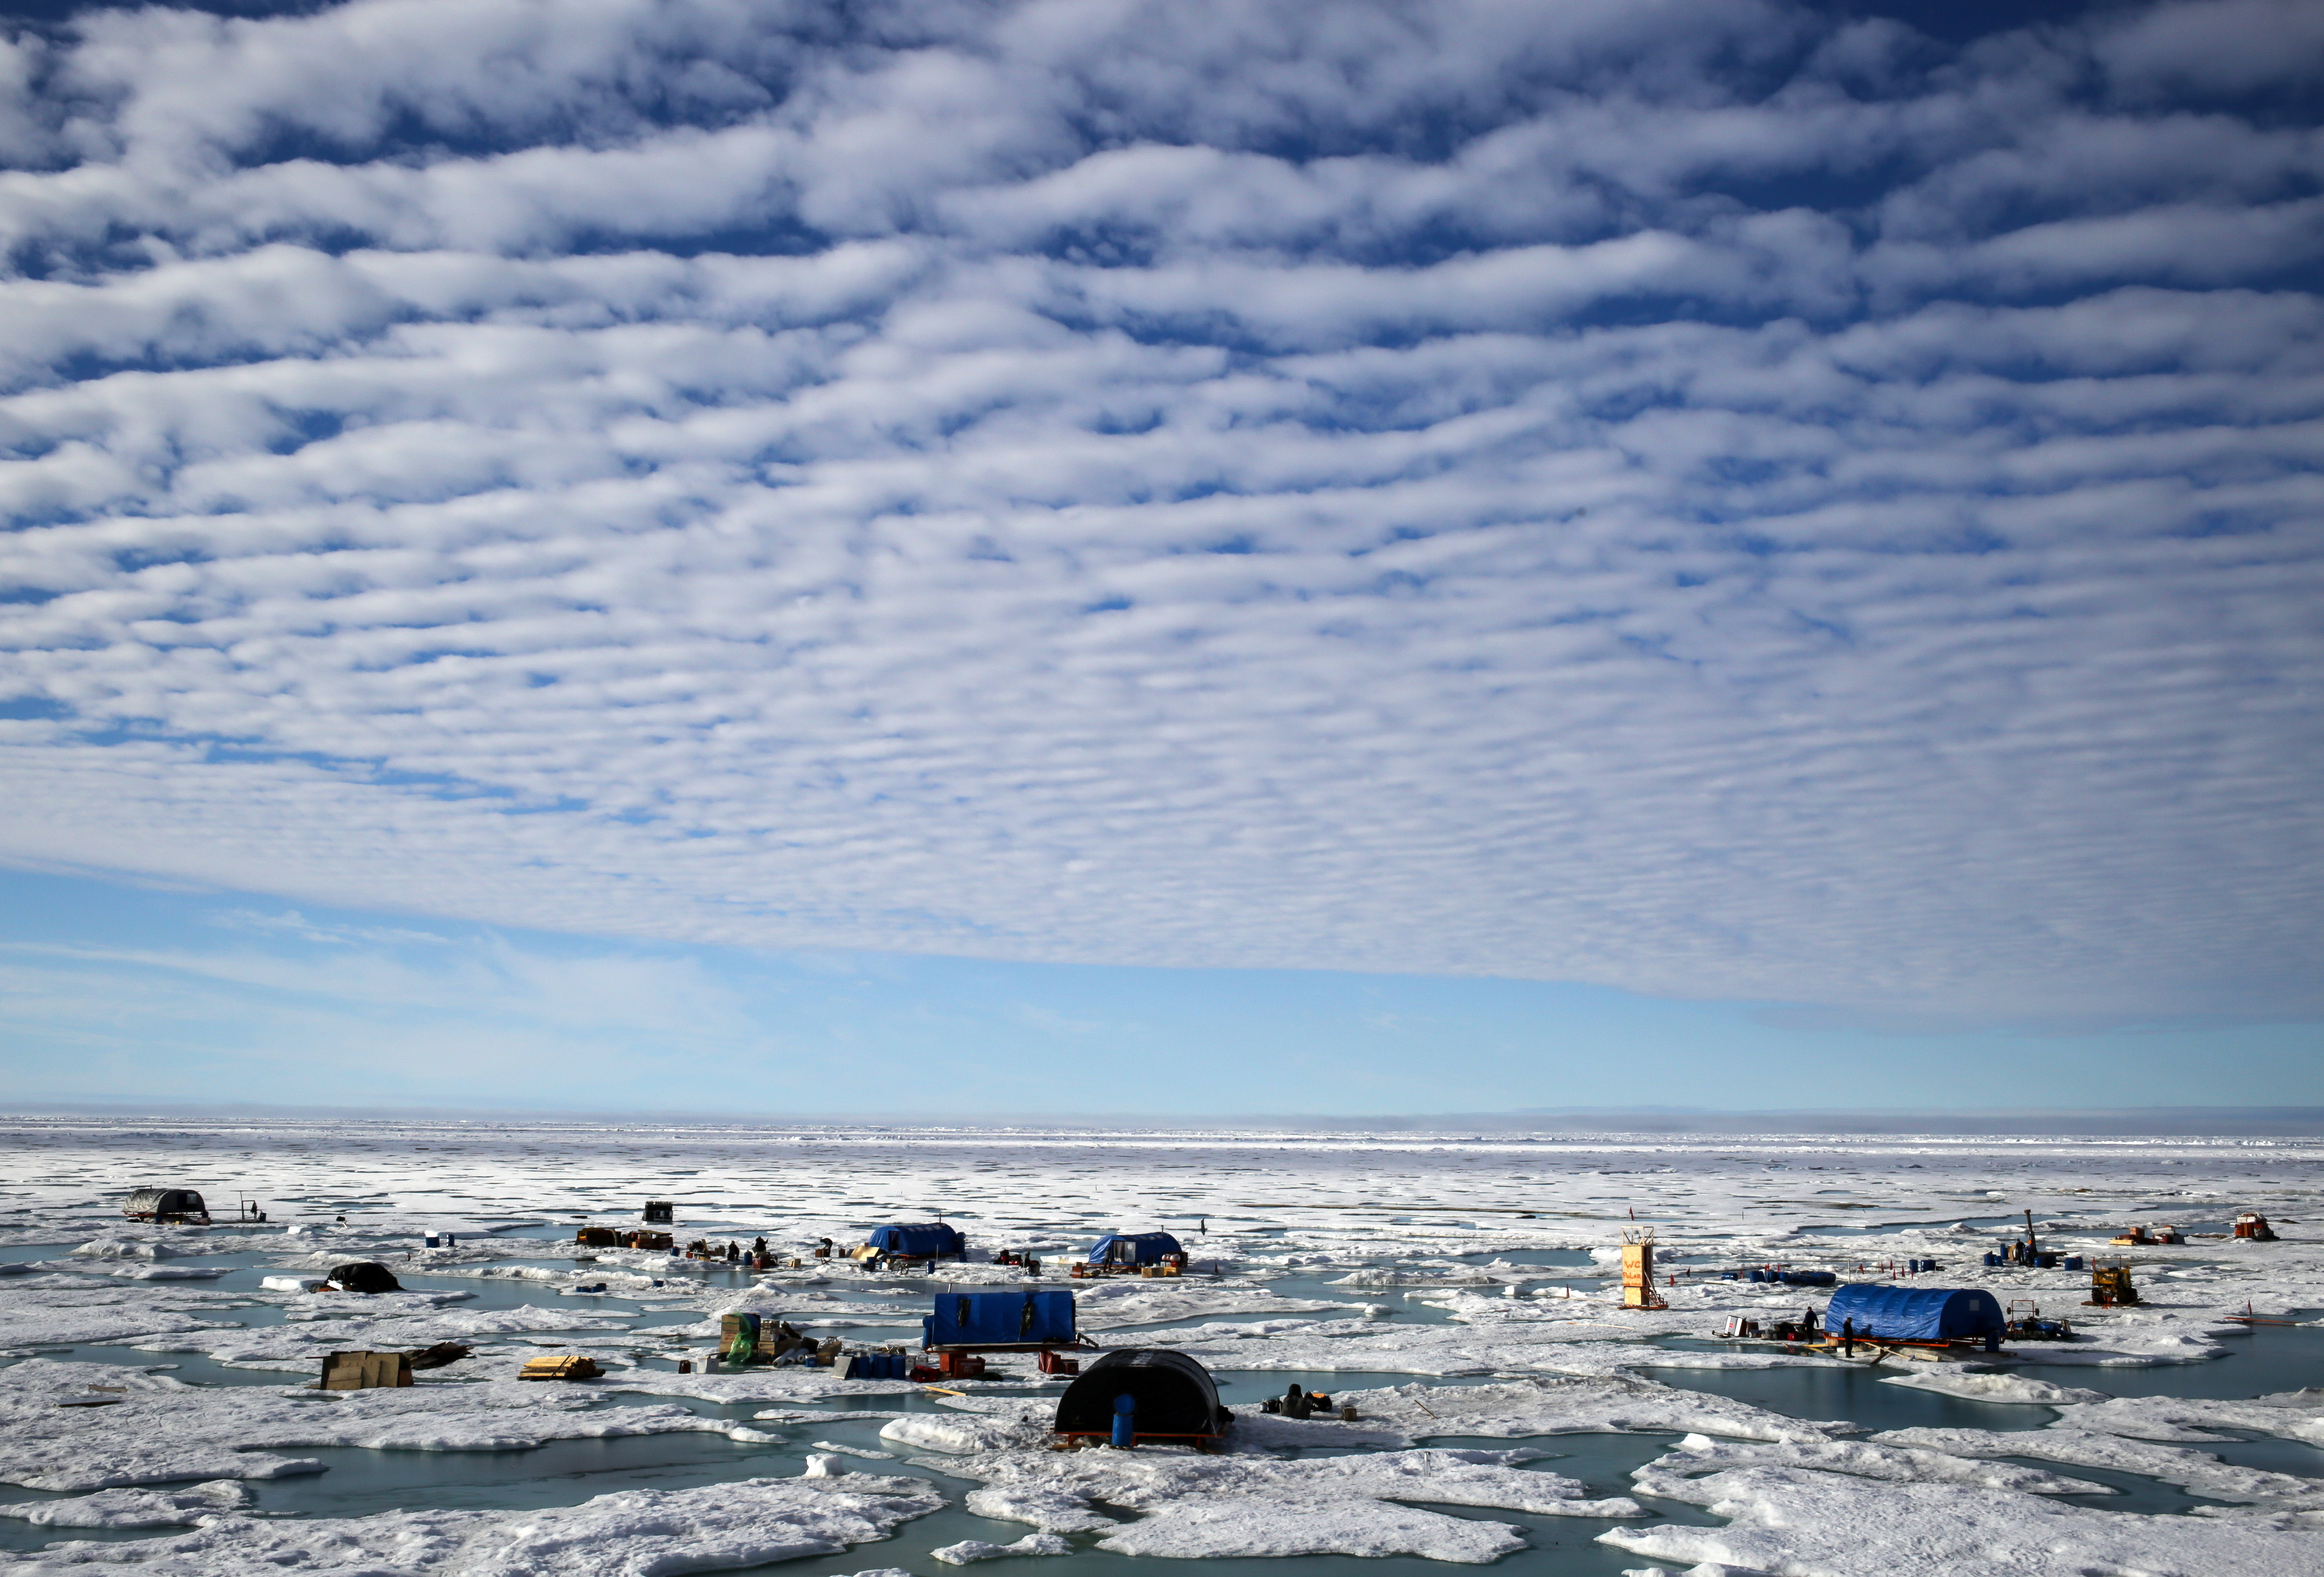 Para ilmuwan memperkirakan Arktik menyimpan 13 persen “unproven oil reserves” (cadangan minyak belum pasti) di dunia dan 30 persen cadangan gas bumi.